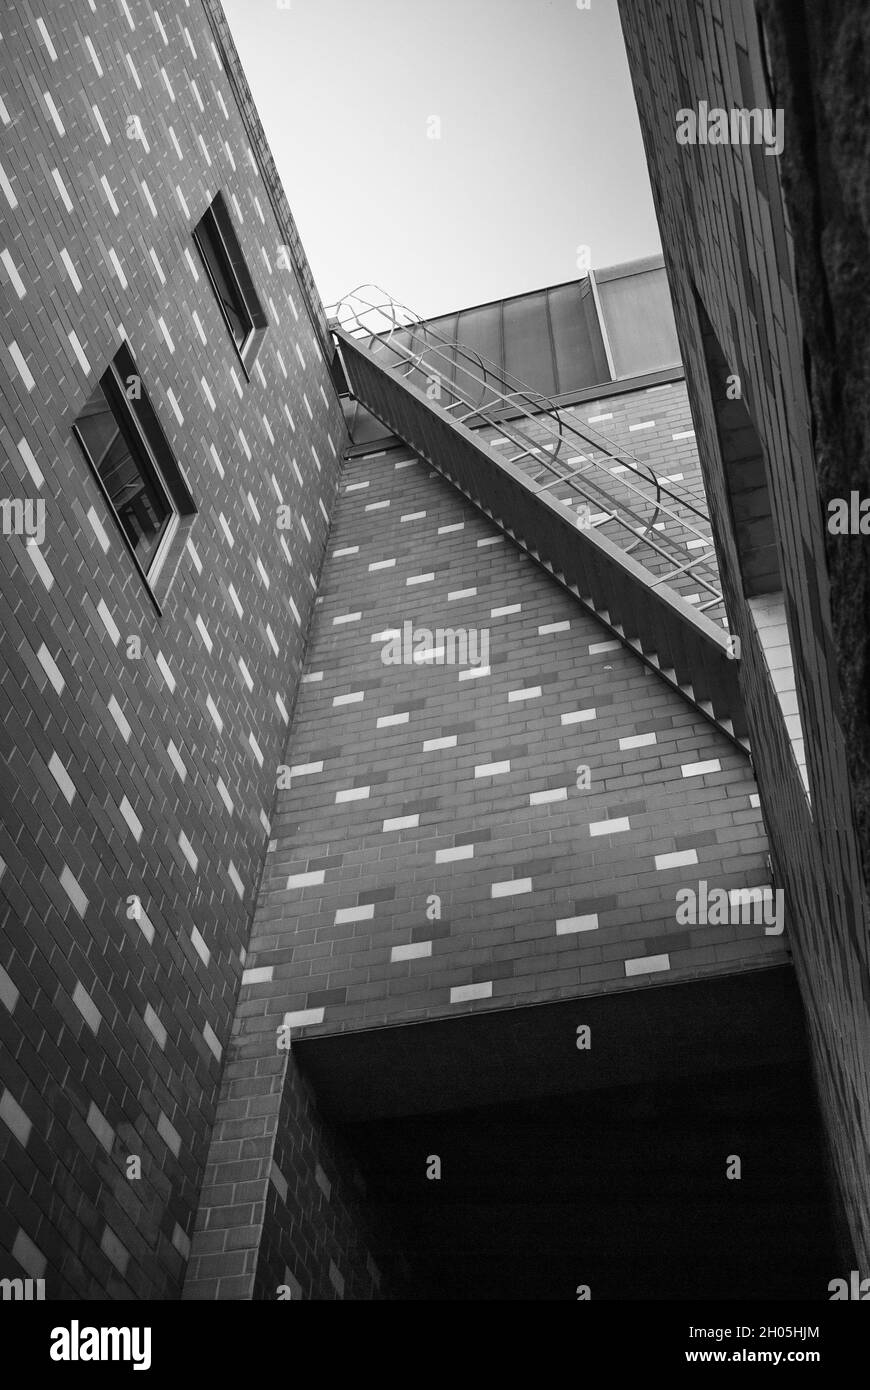 Vue à angle bas sur le bâtiment en brique de la rue latérale avec des escaliers - noir et blanc Banque D'Images